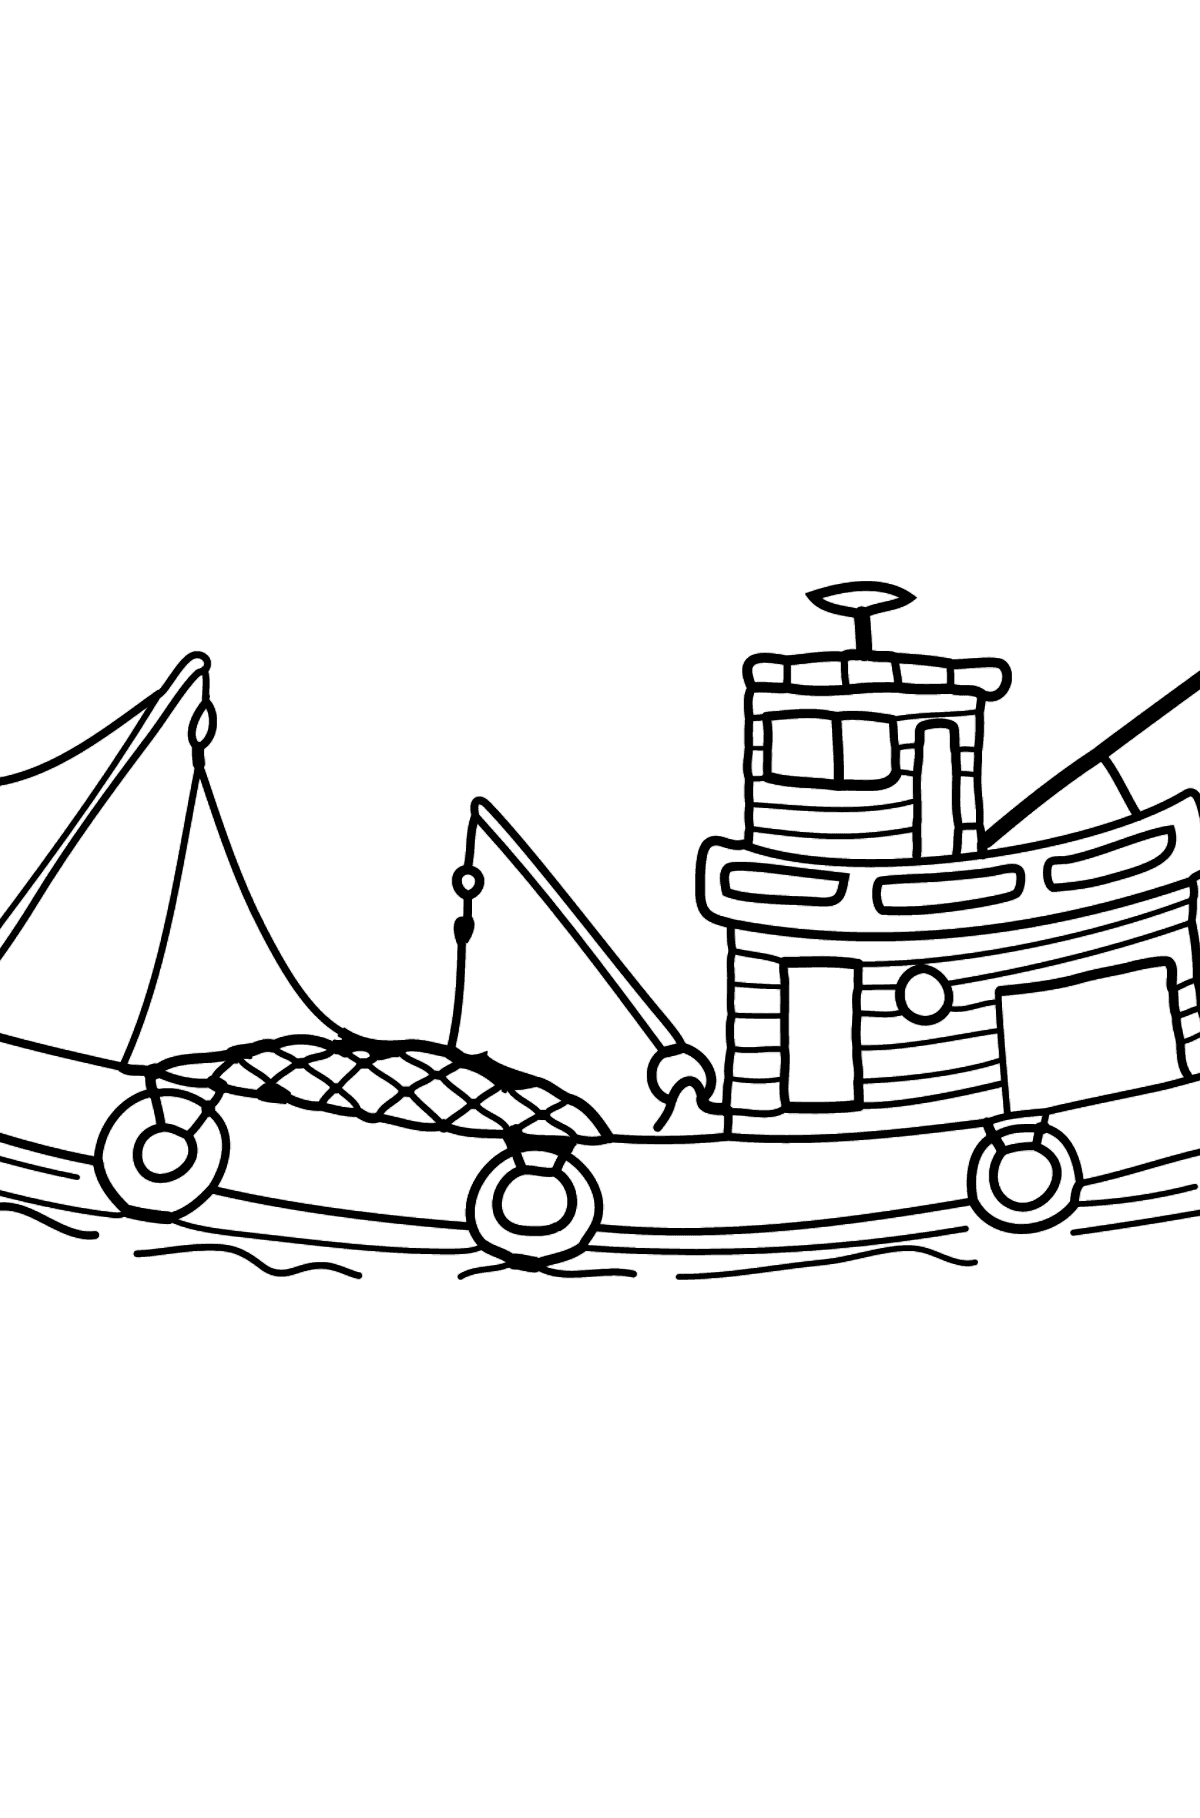 Kleurplaat vissersboot - kleurplaten voor kinderen